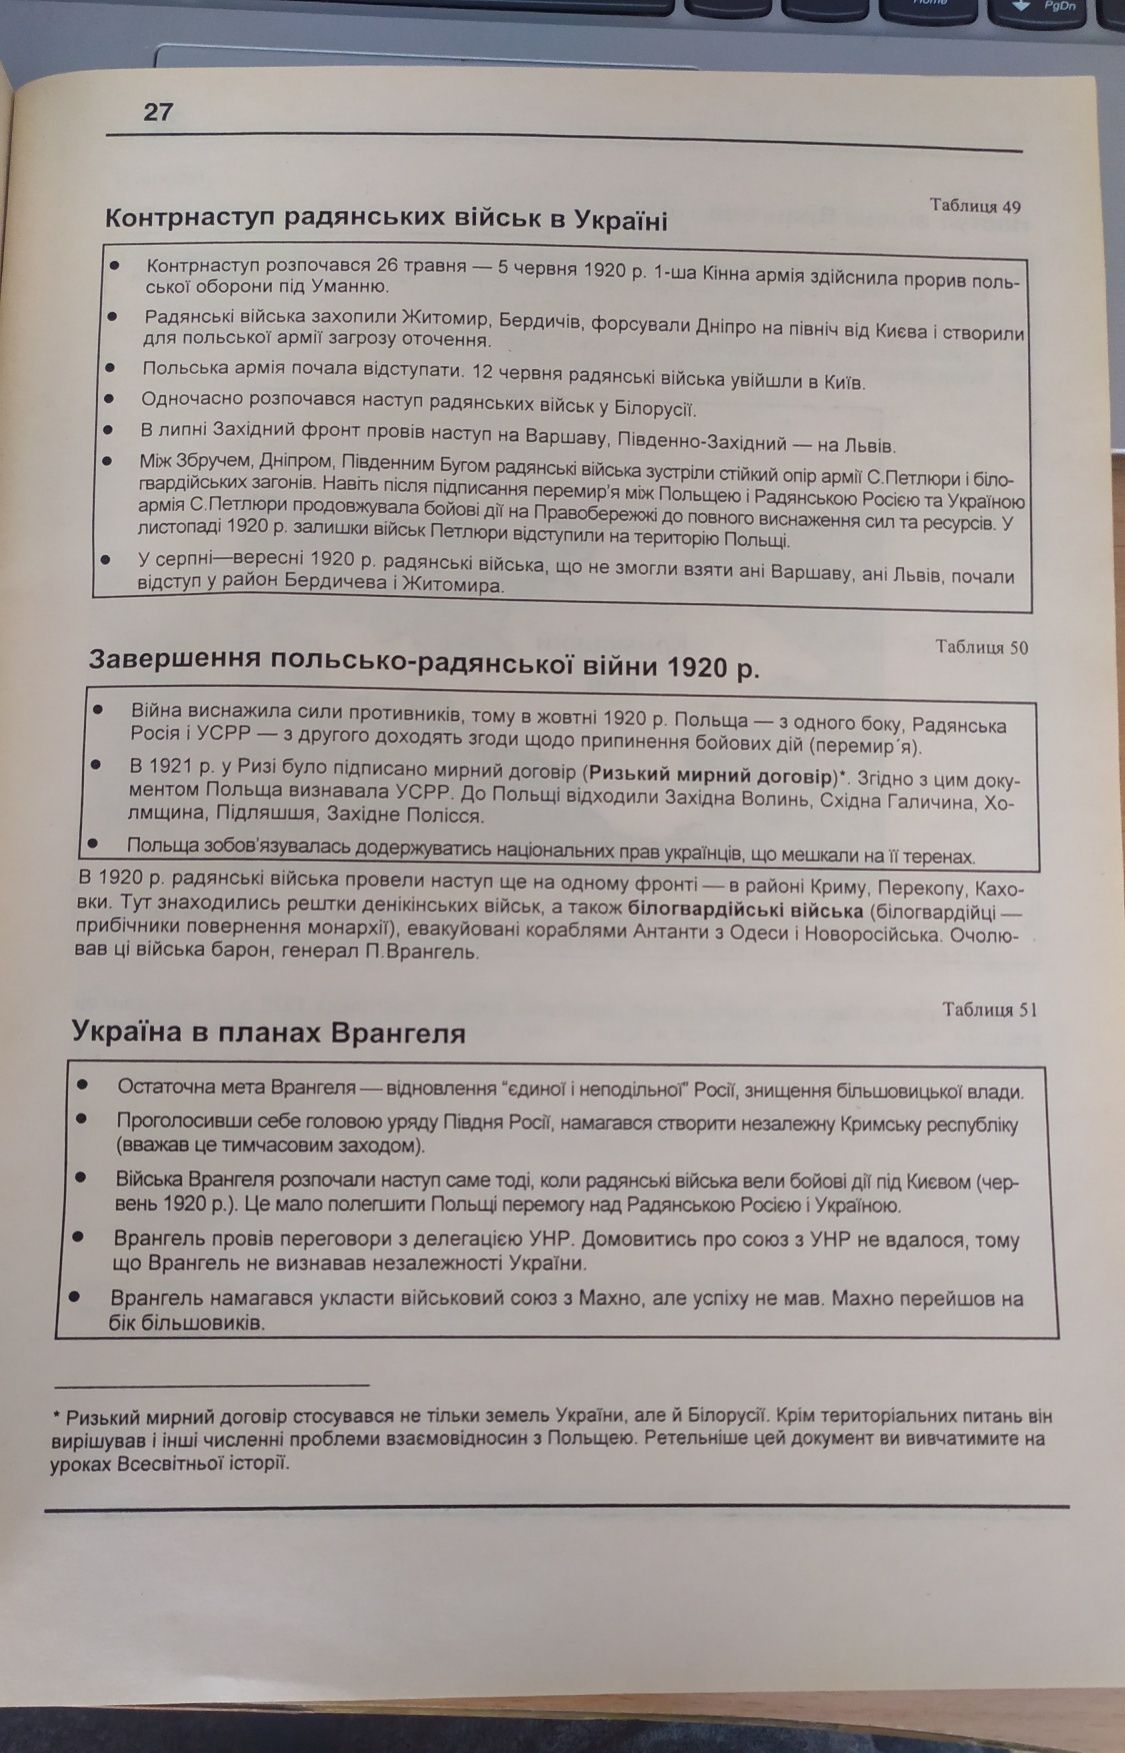 Історія України: у картах і схемах 10-11кл., словник-довідник 7-11кл.